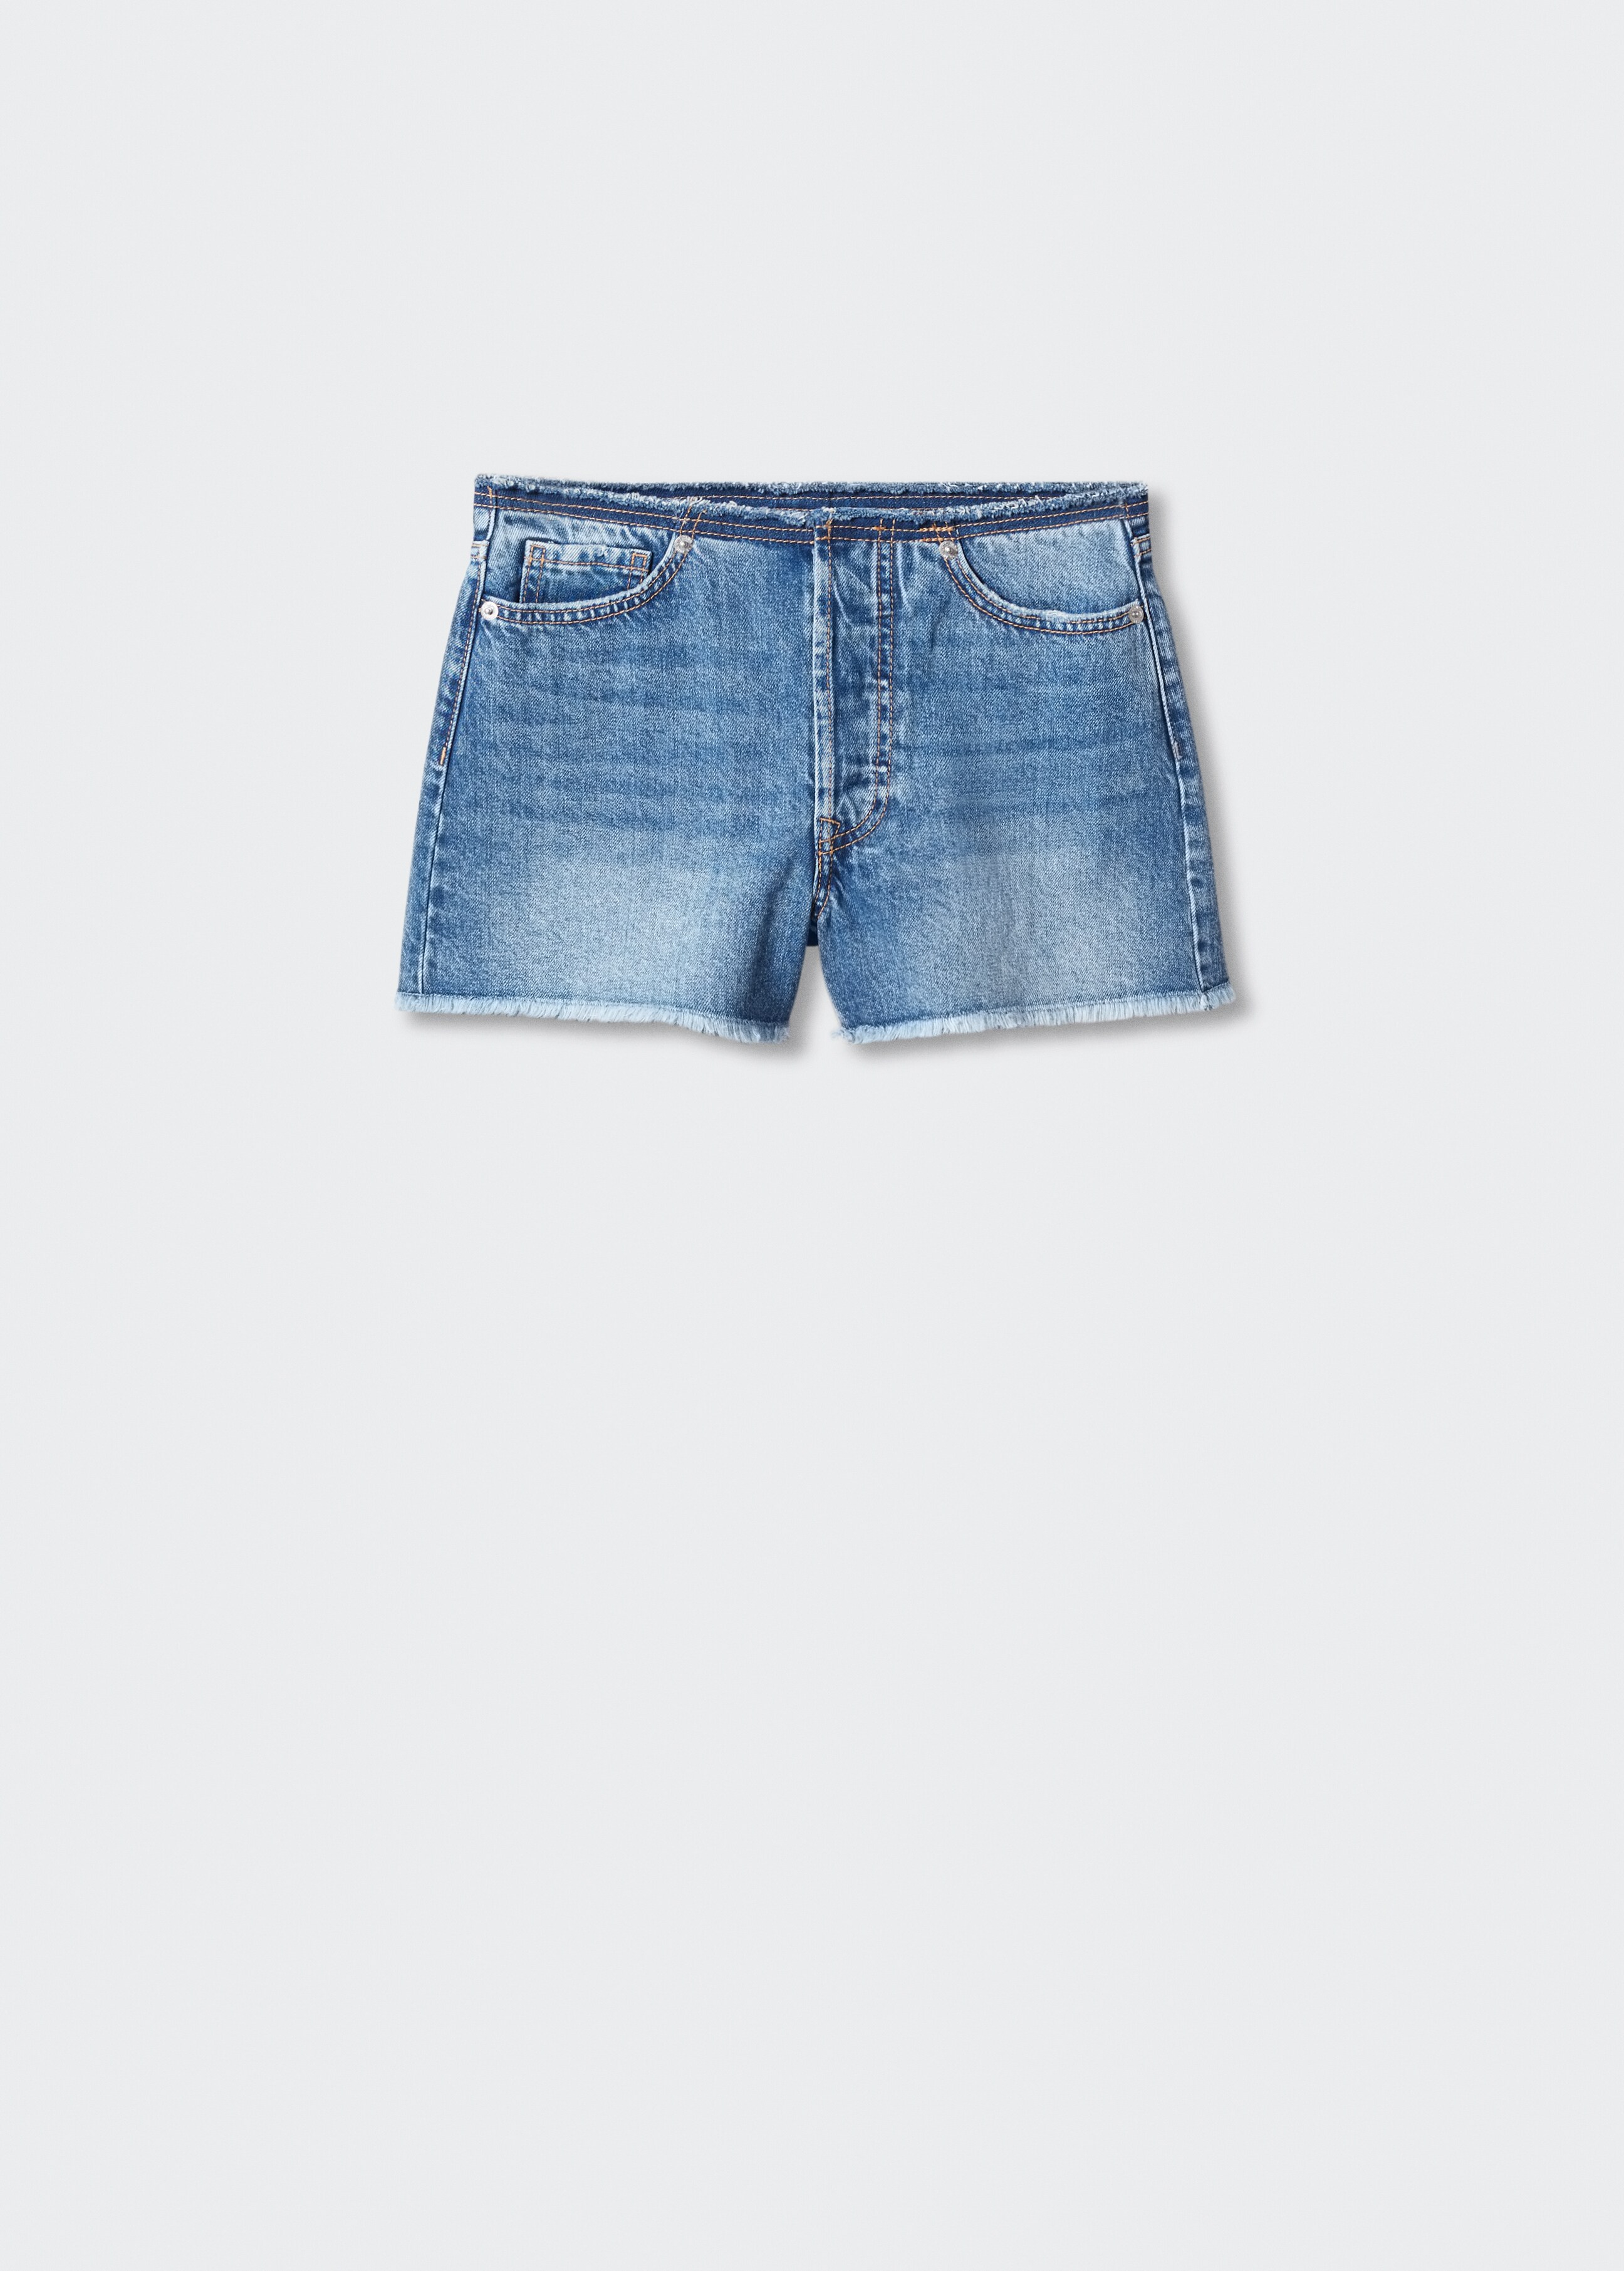 Short jean taille normale - Article sans modèle